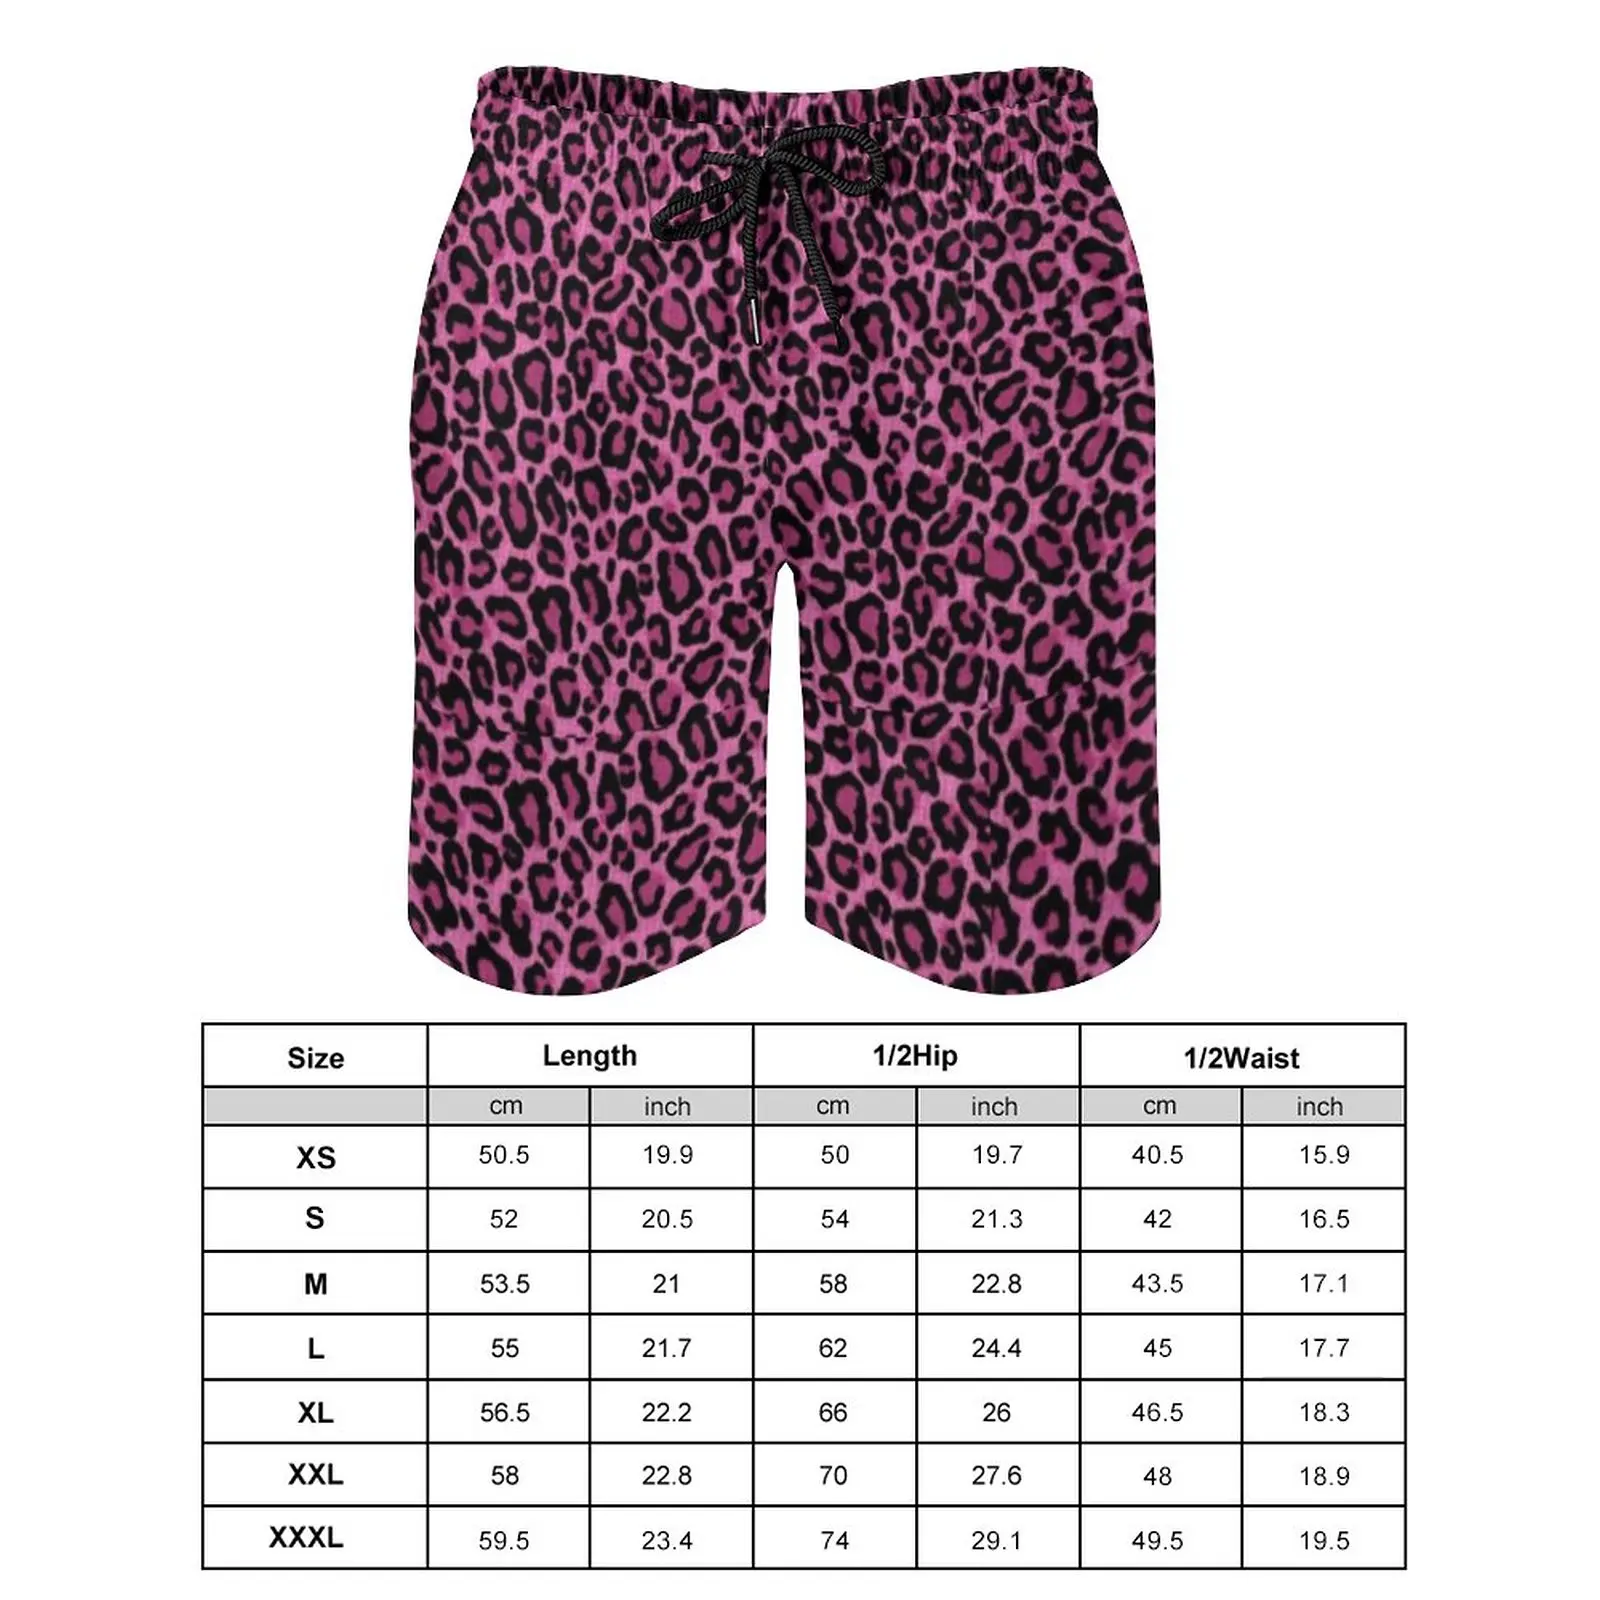 Funky leopard print board shorts de alta qualidade rosa preto manchas  impressão placa calças curtas homem cintura elástica troncos natação